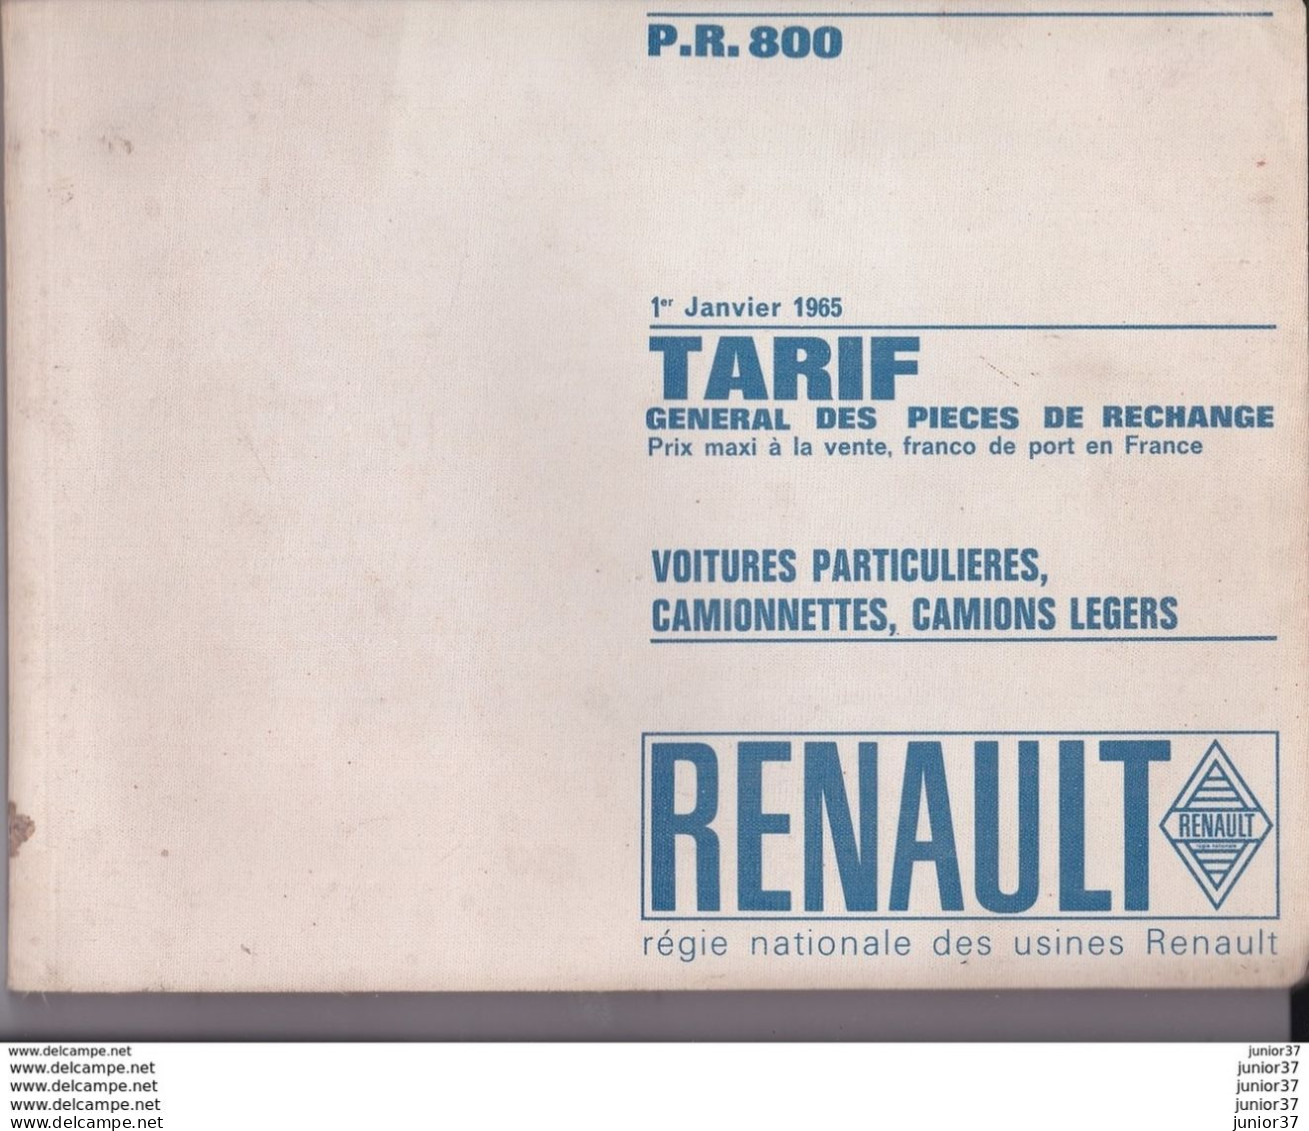 Livre Tarif Général Des Pièces De Rechange RENAULT Janvier 1965 P.R 800 + Additif Correctif P.R 800 Juillet 1965 - Automobile